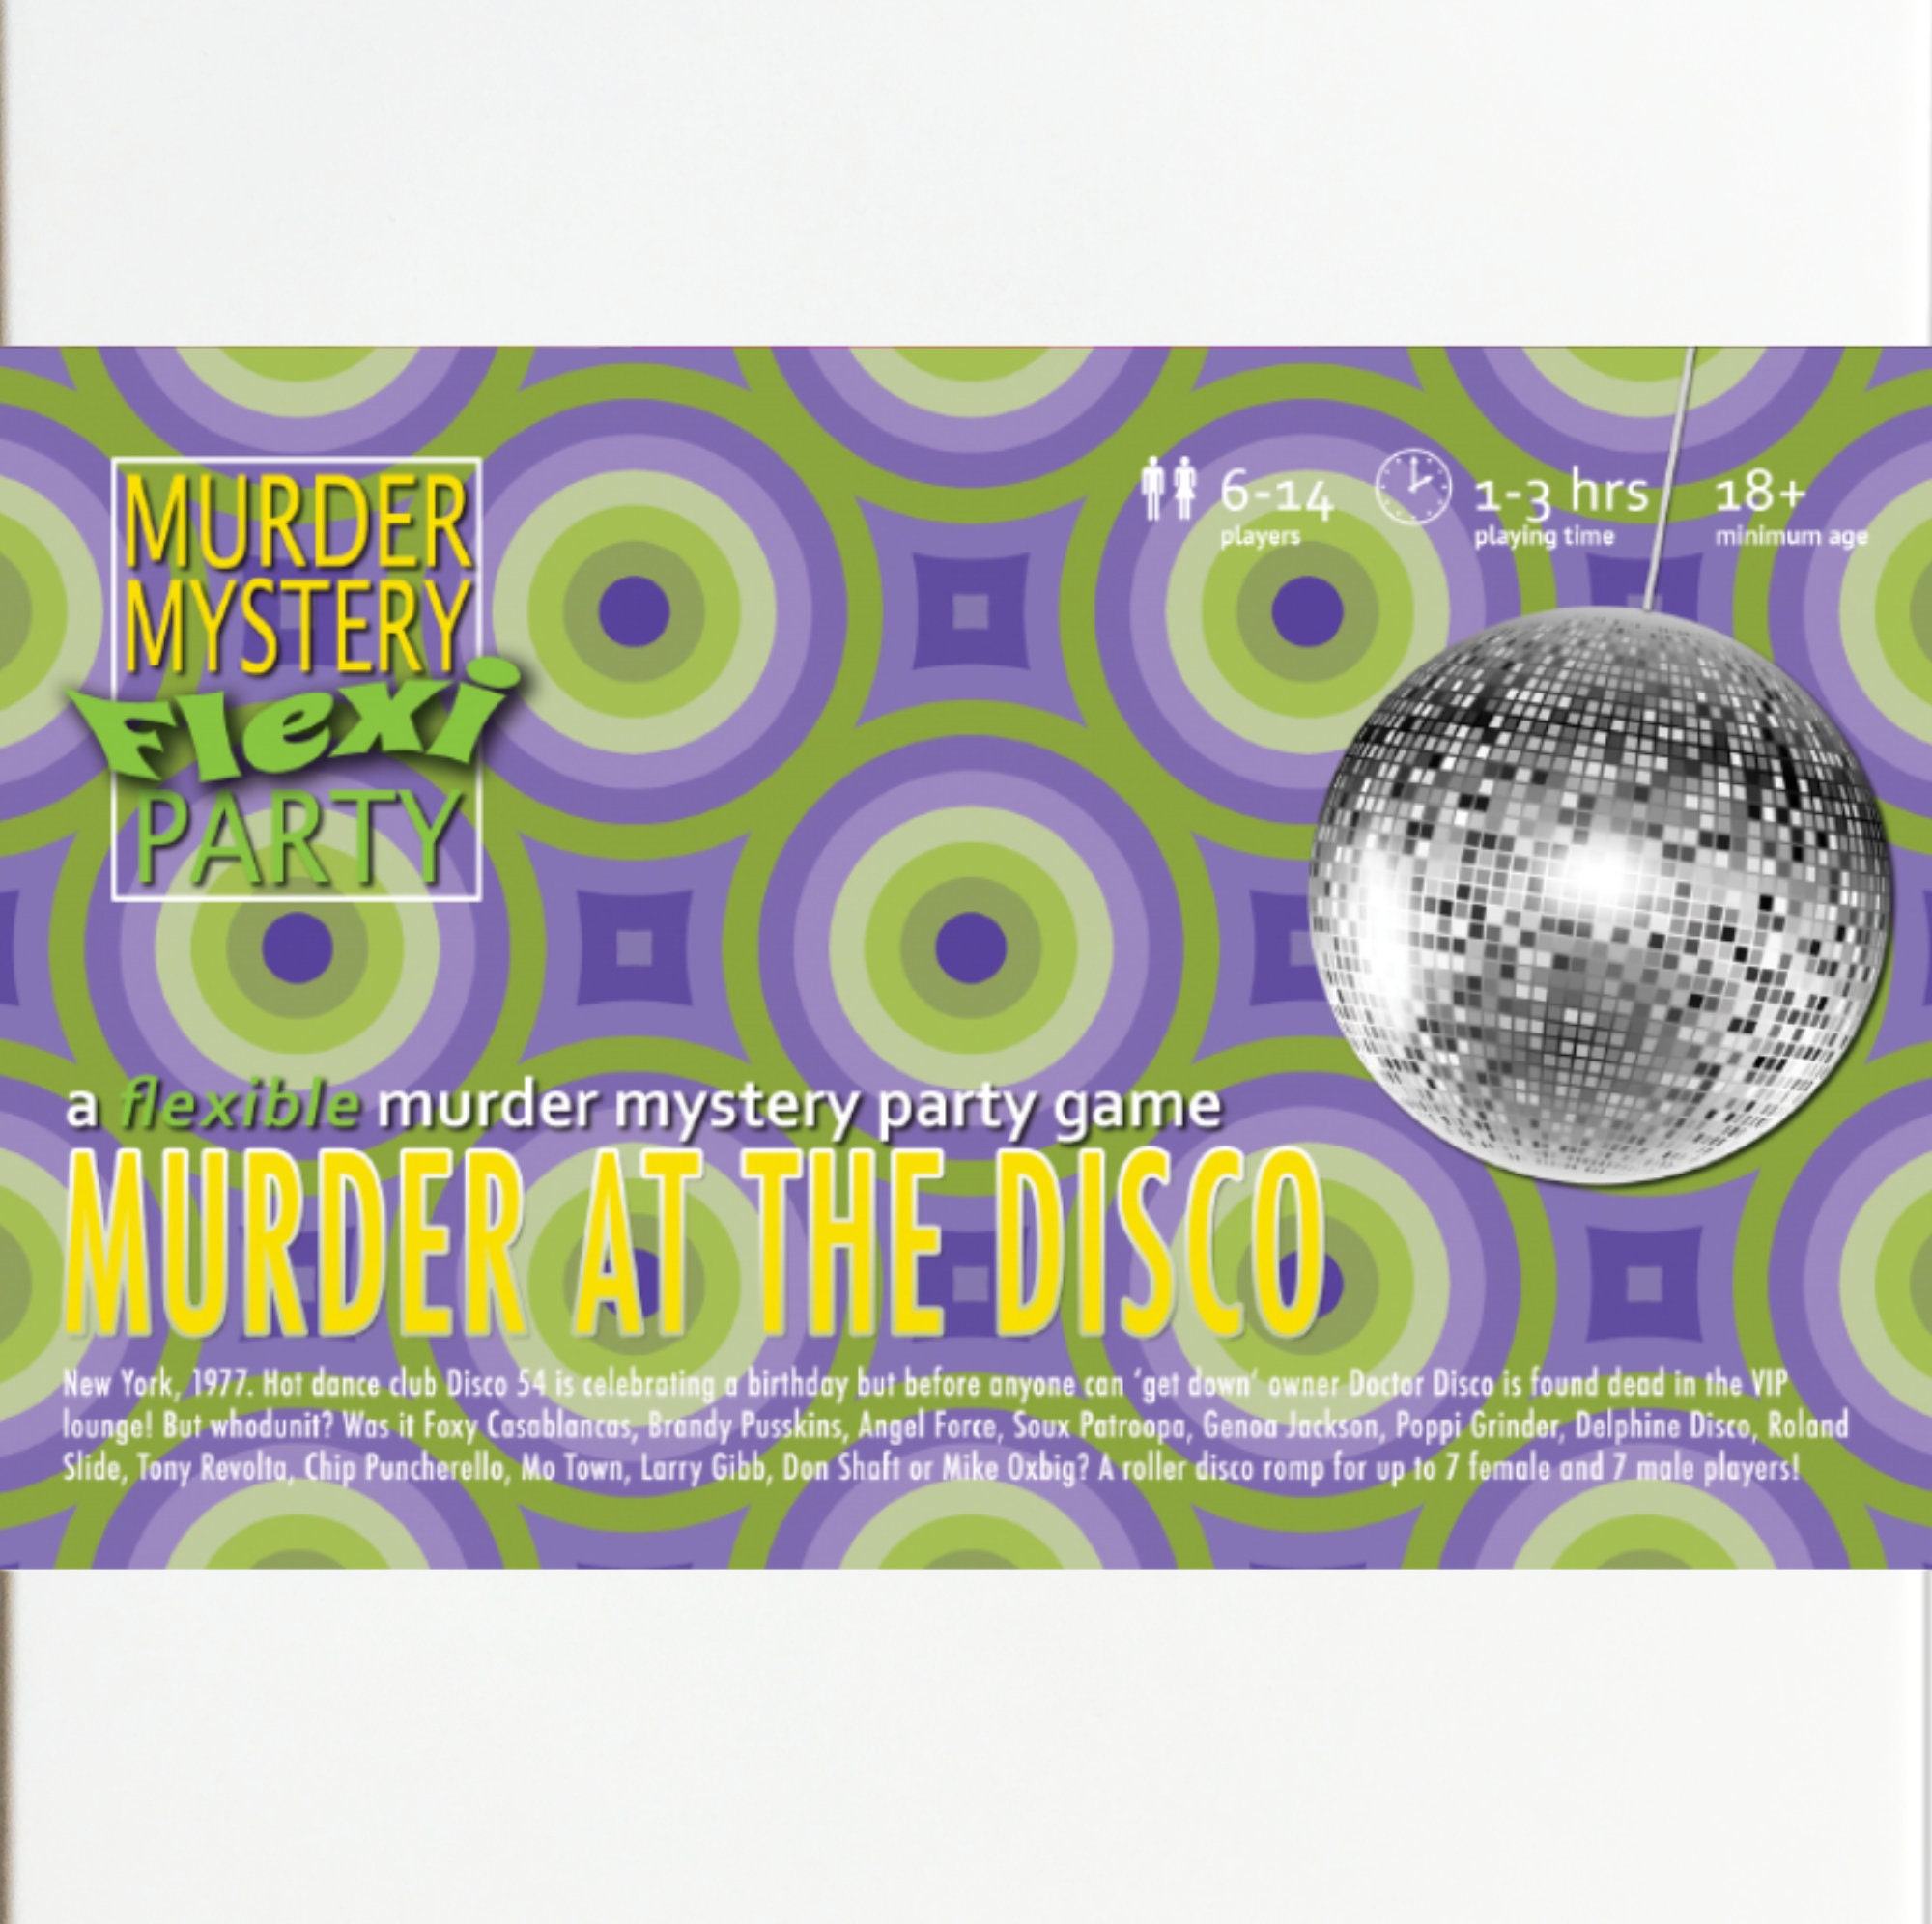 1970s Disco Themed 6-14 Player Flexible Murder Mystery Dinner